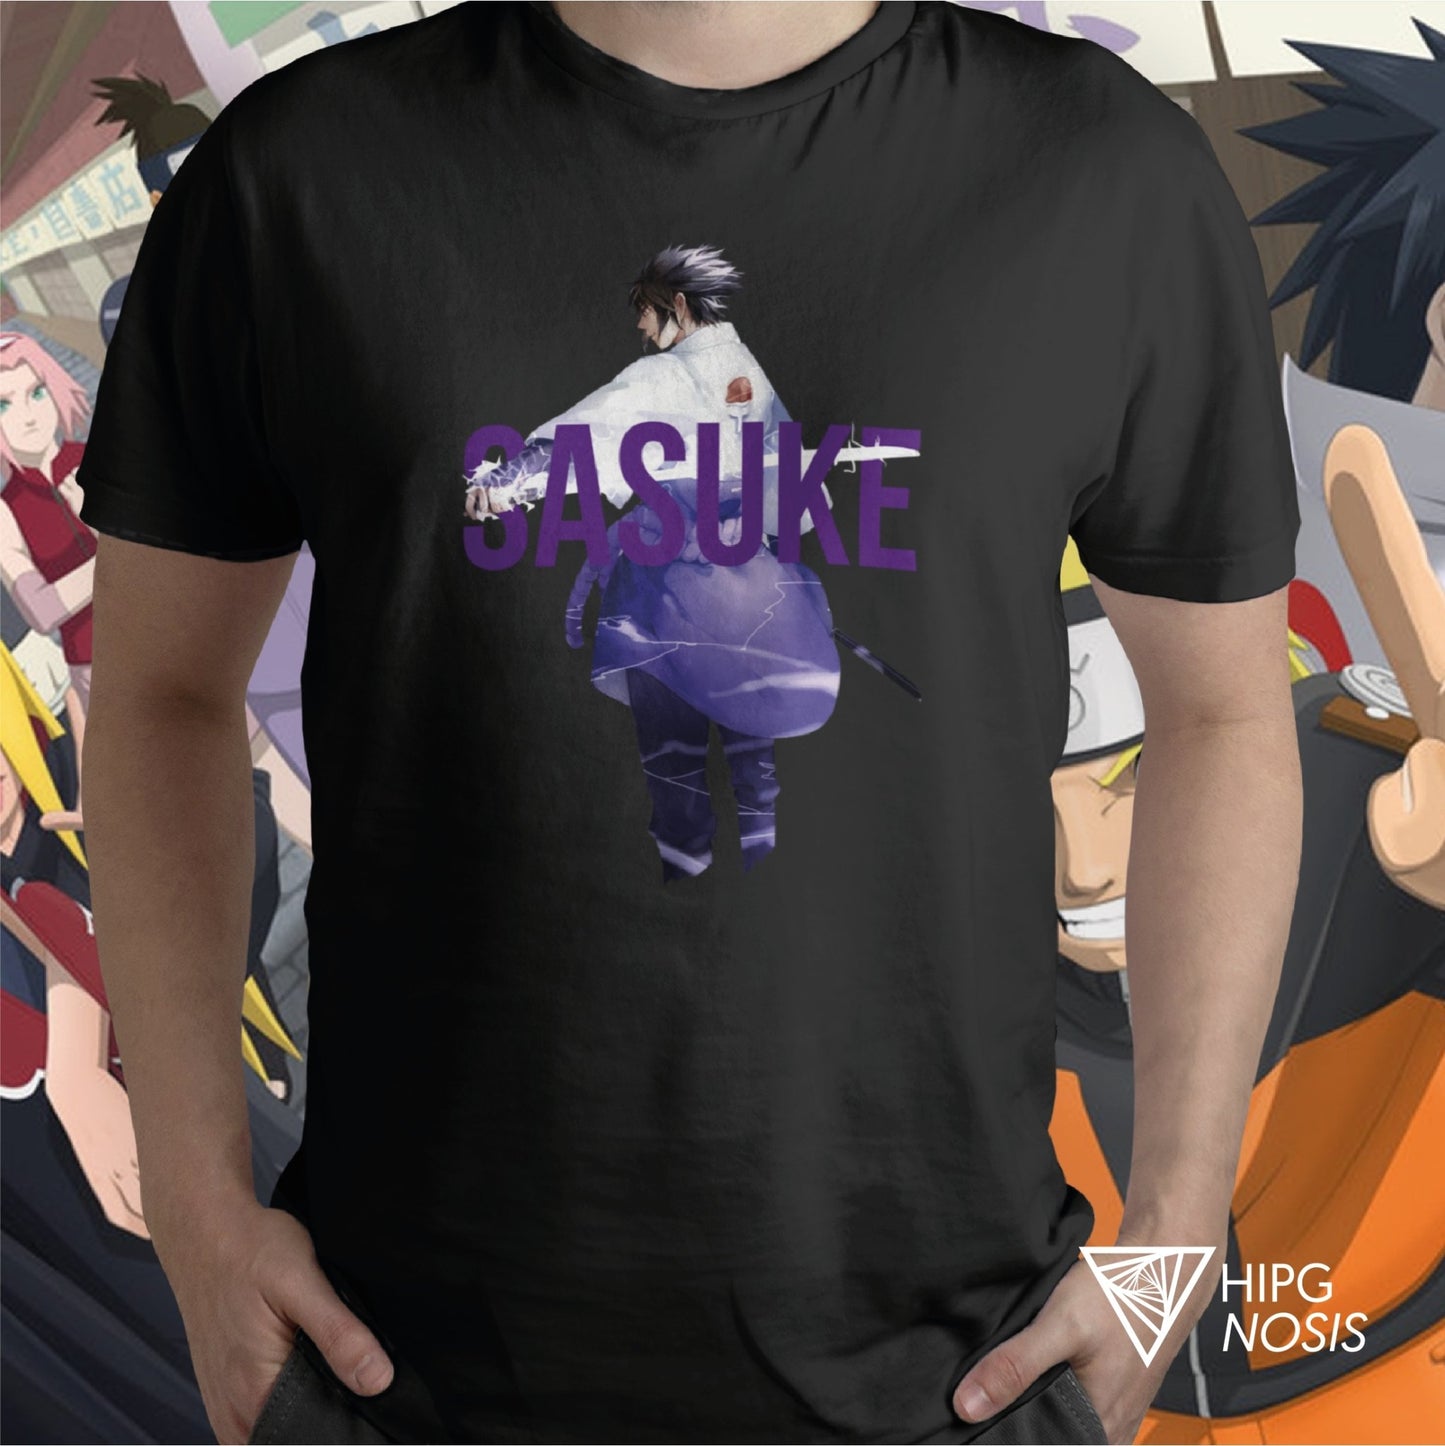 Naruto Sasuke 01 - Hipgnosis